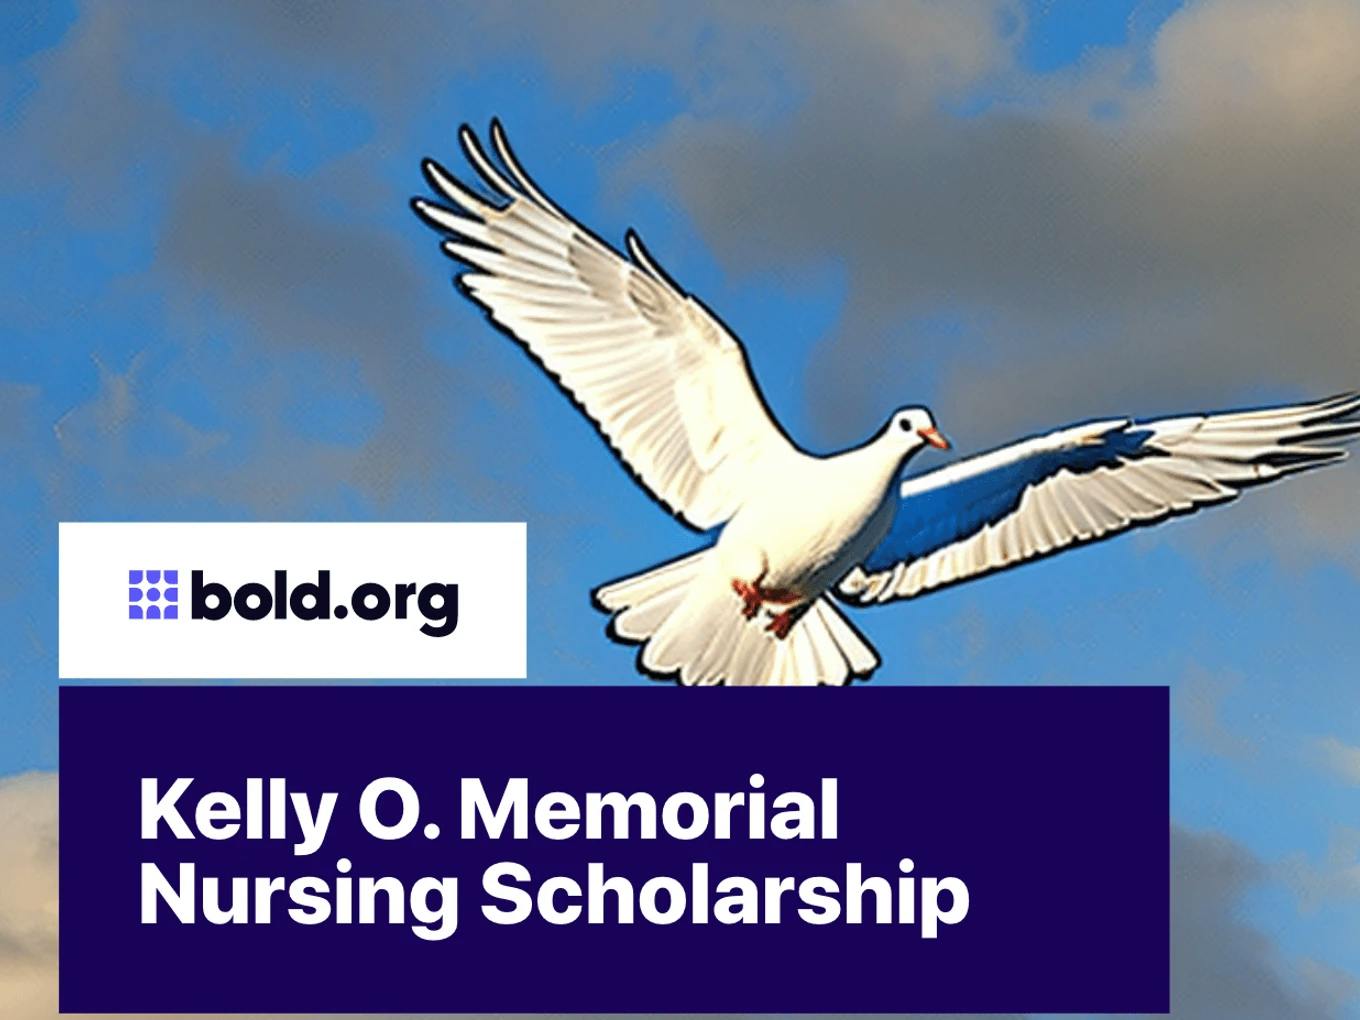 Kelly O. Memorial Nursing Scholarship